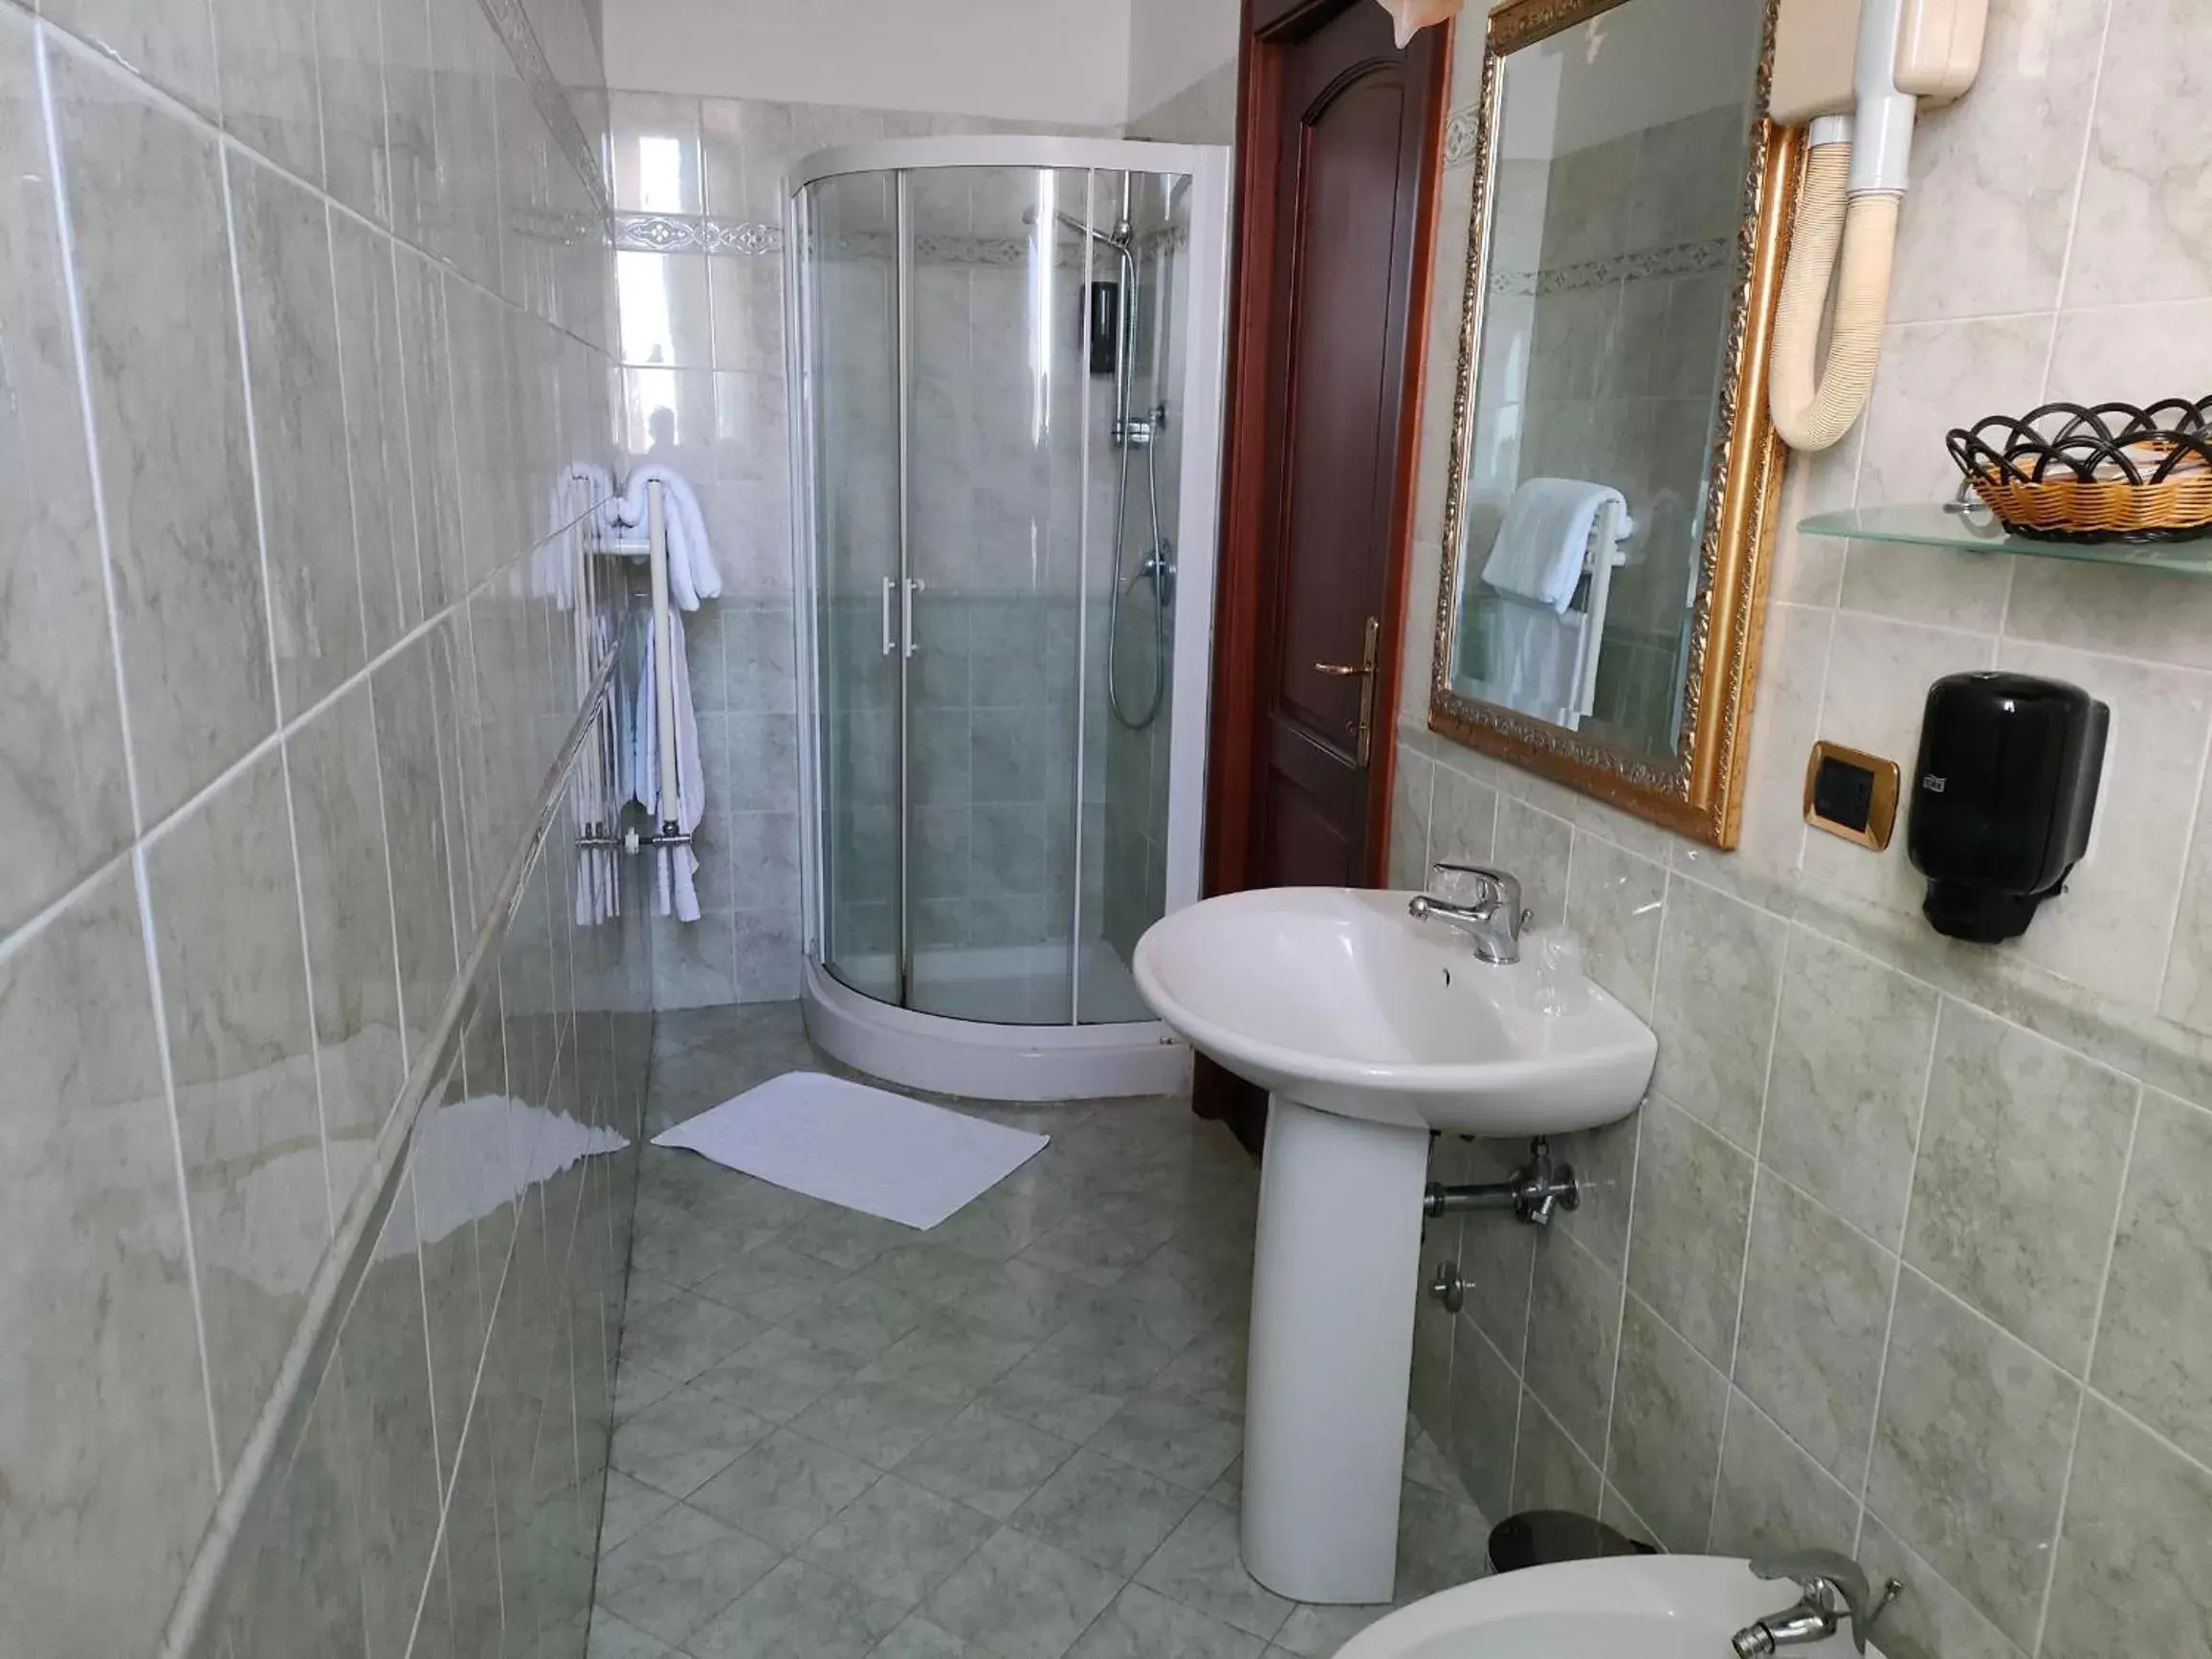 Bathroom in Hotel Parco Dei Principi